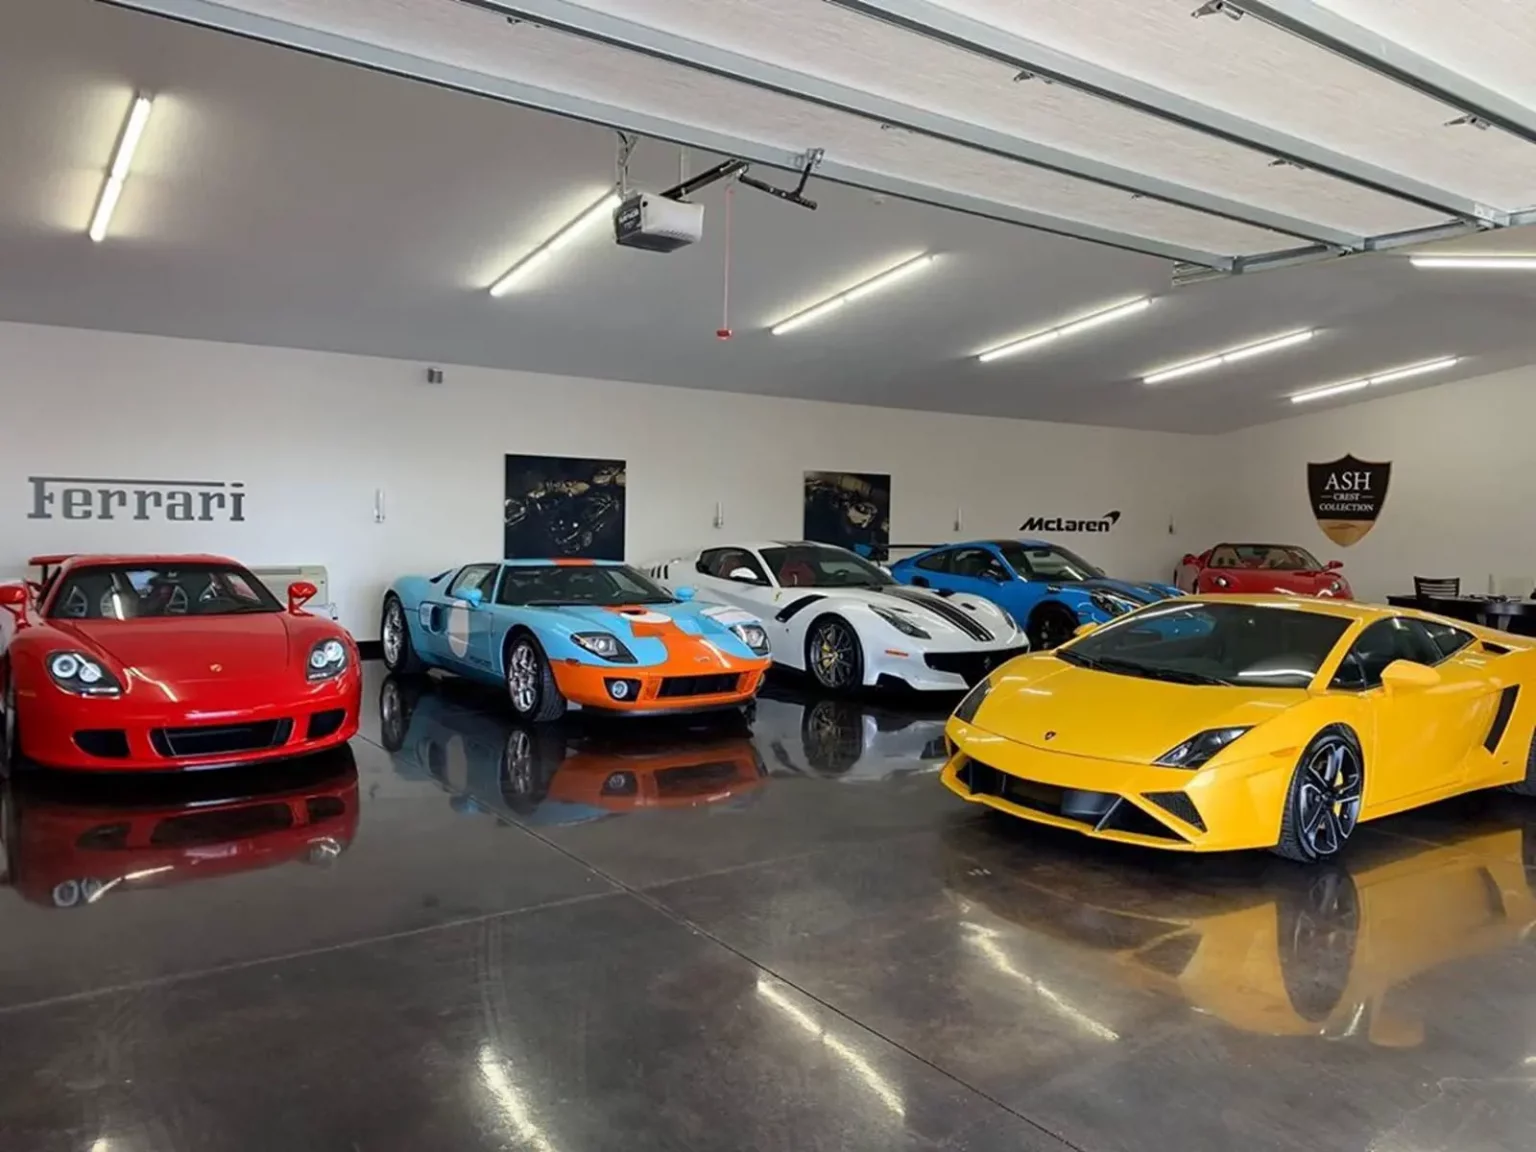 Collection de voitures de sport de luxe colorées, y compris Ferrari et McLaren, dans un garage privé, reflétant la passion pour les voitures exotiques et la collection.